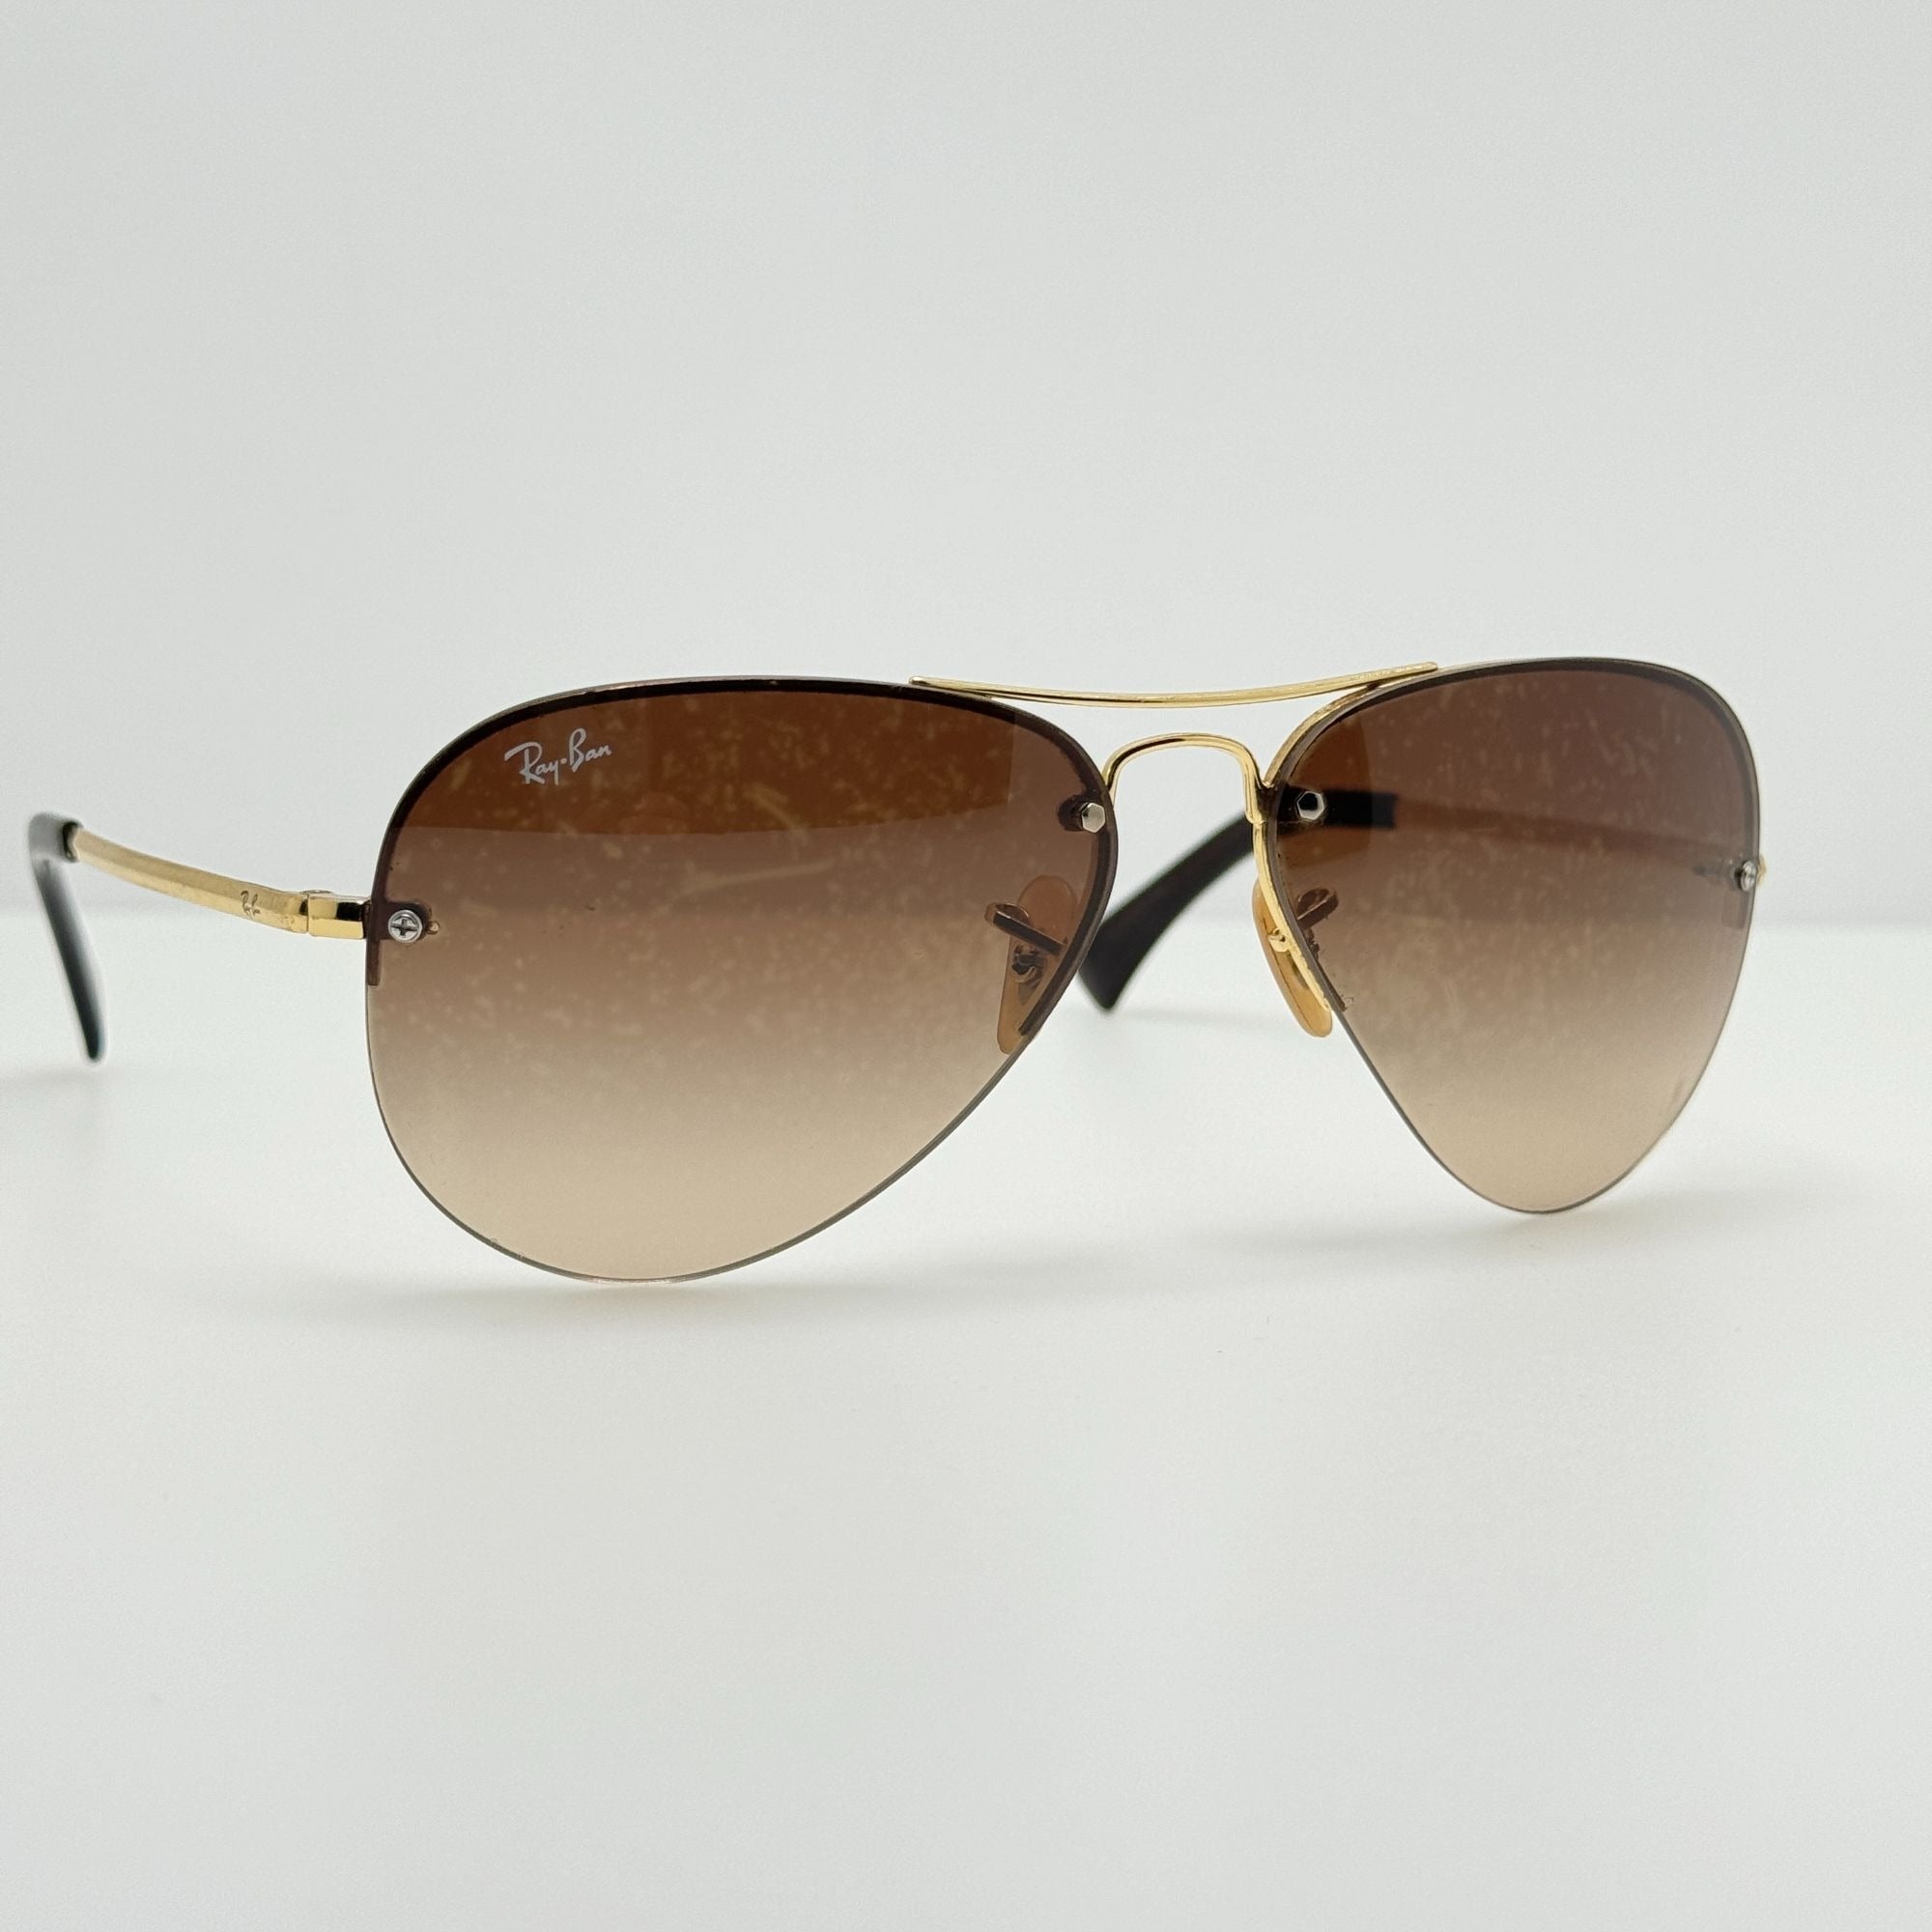 Ray-Ban-Sunglasses-RB-3449-001/13-59-14-3N-Sunglasses